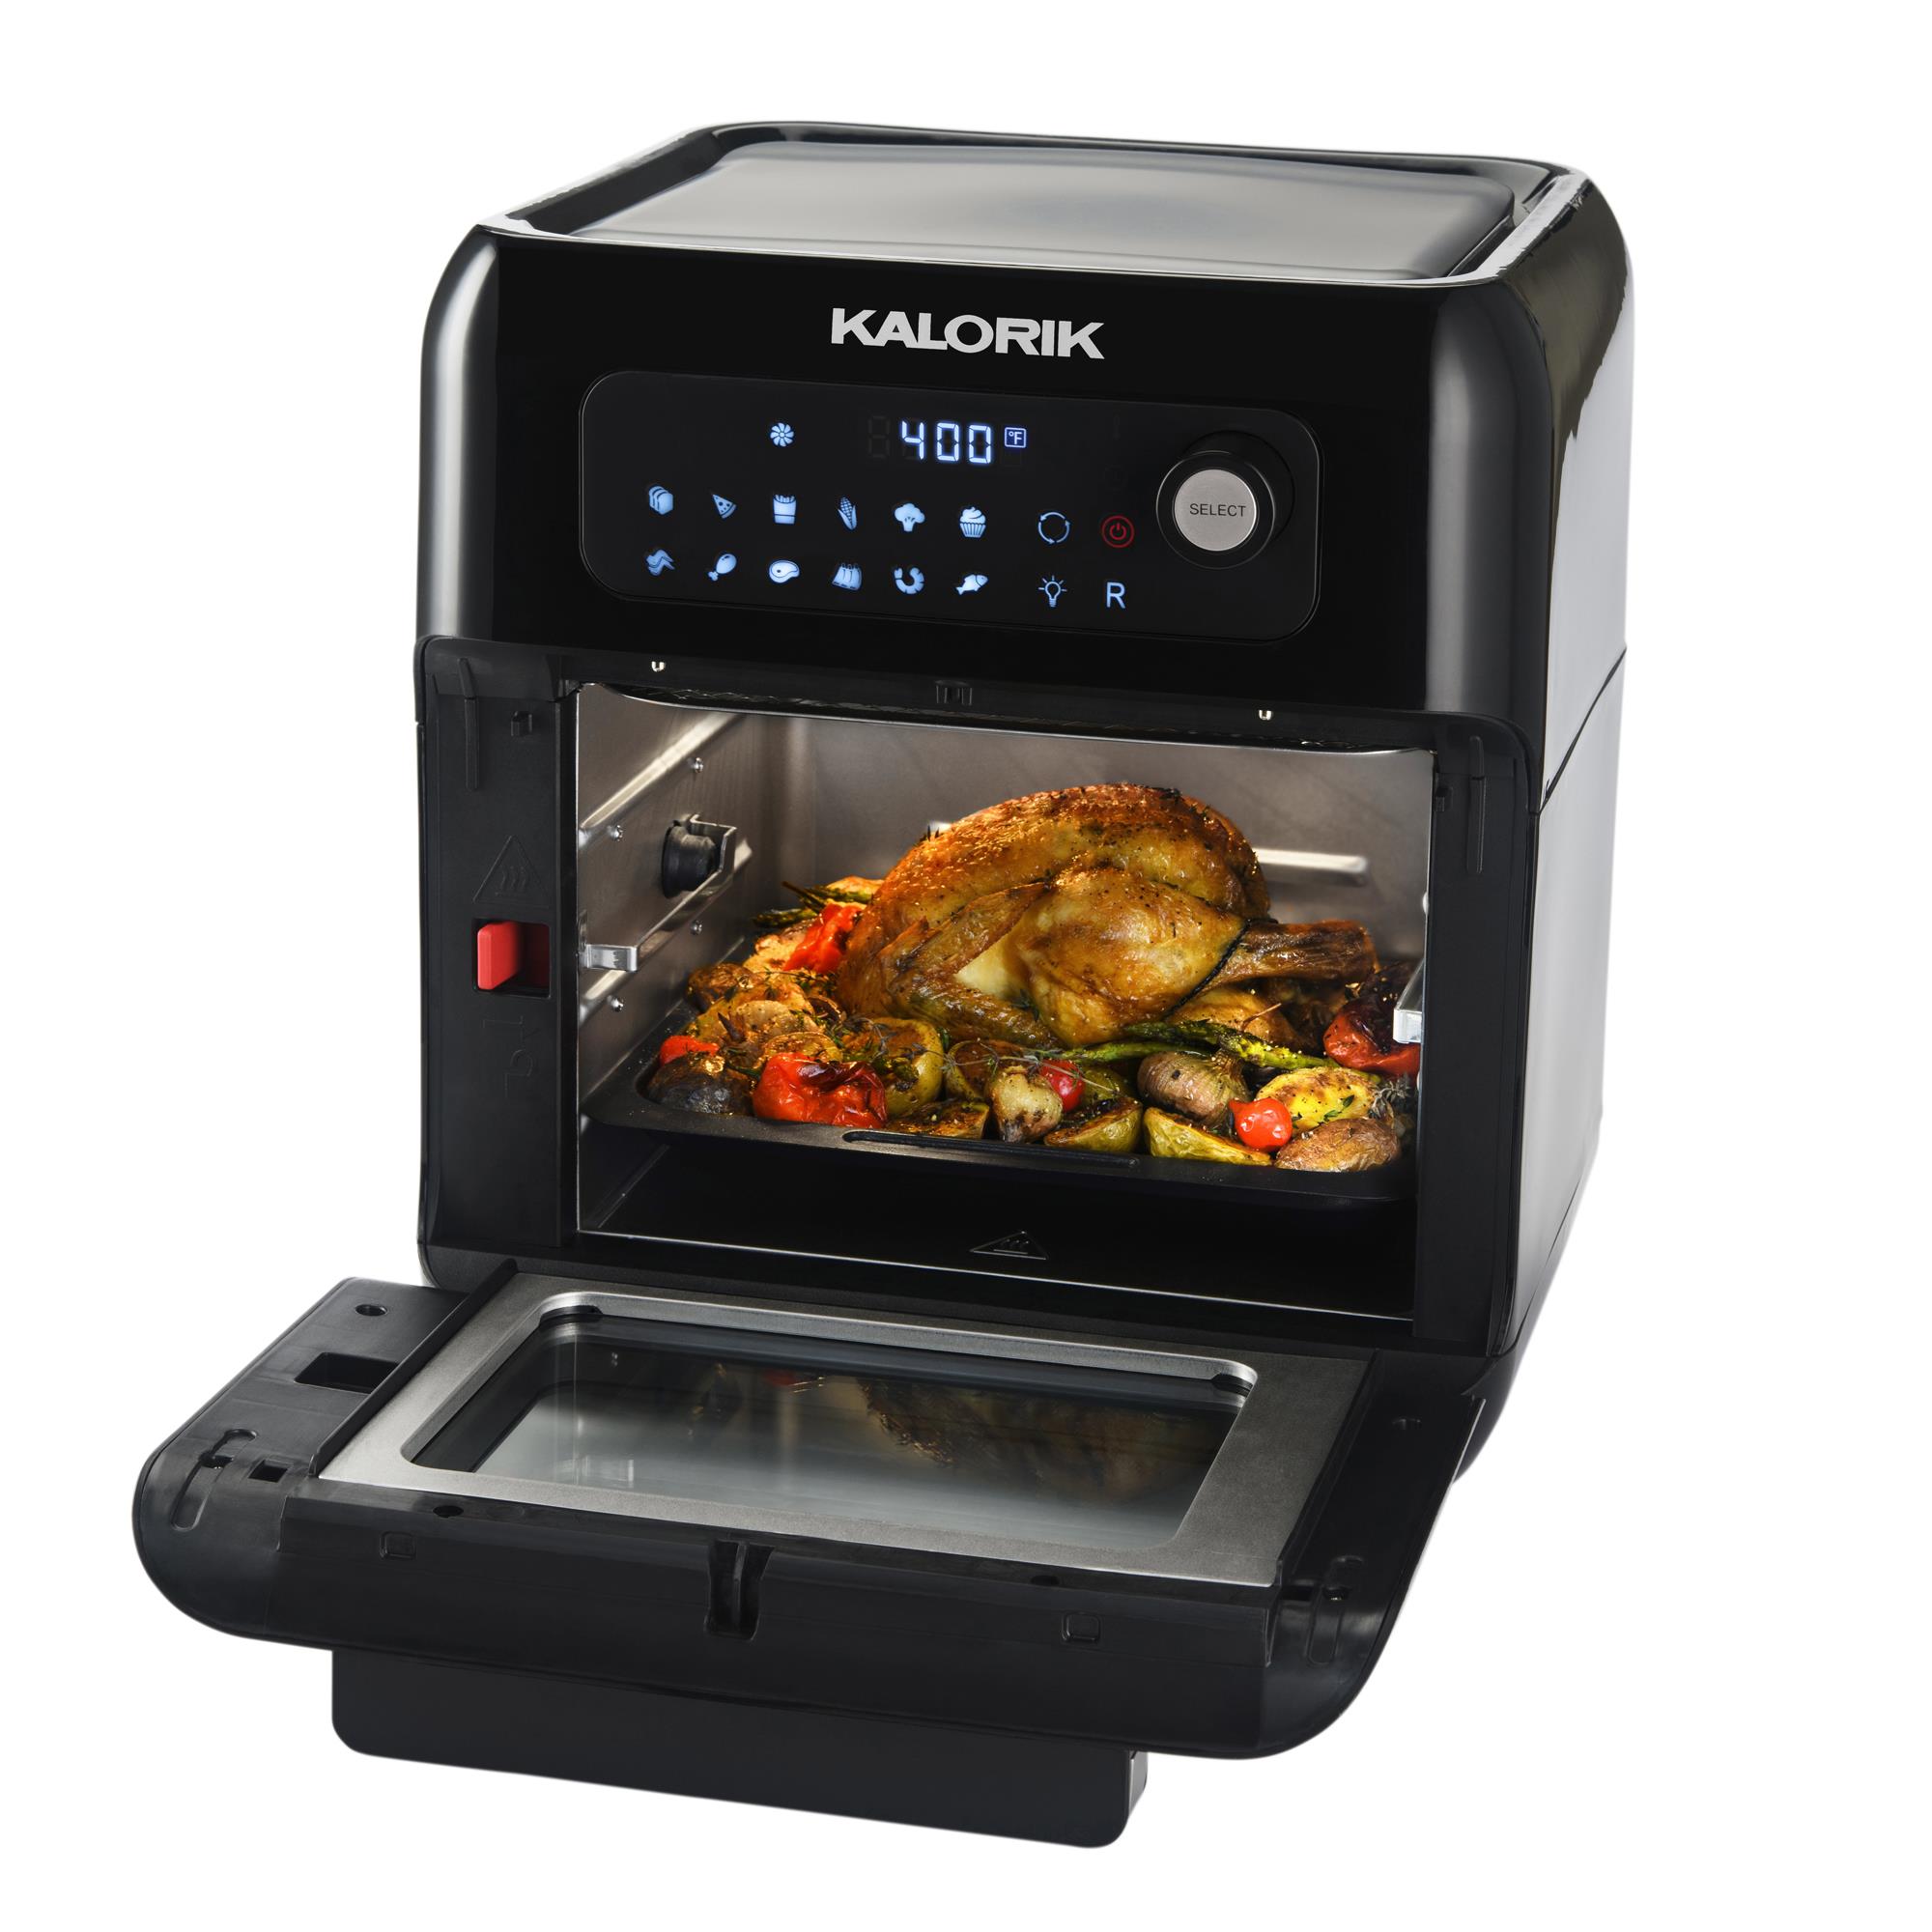 Kalorik Digital Air Fryer Oven